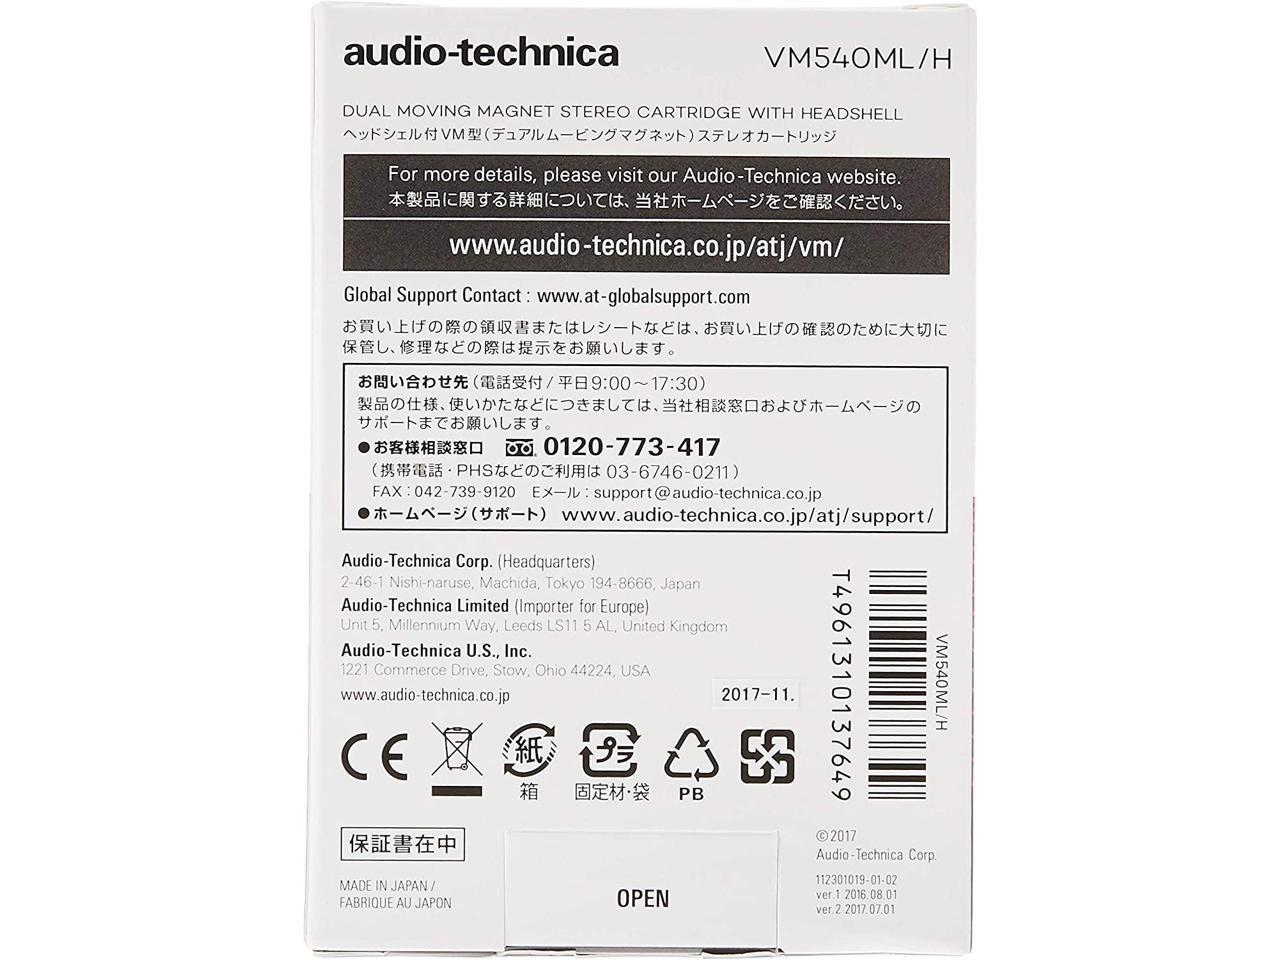 18873円 日本全国 送料無料 audio-technica オーディオテクニカ VM型 デュアルムービングマグネット ステレオカートリッジ VM740ML